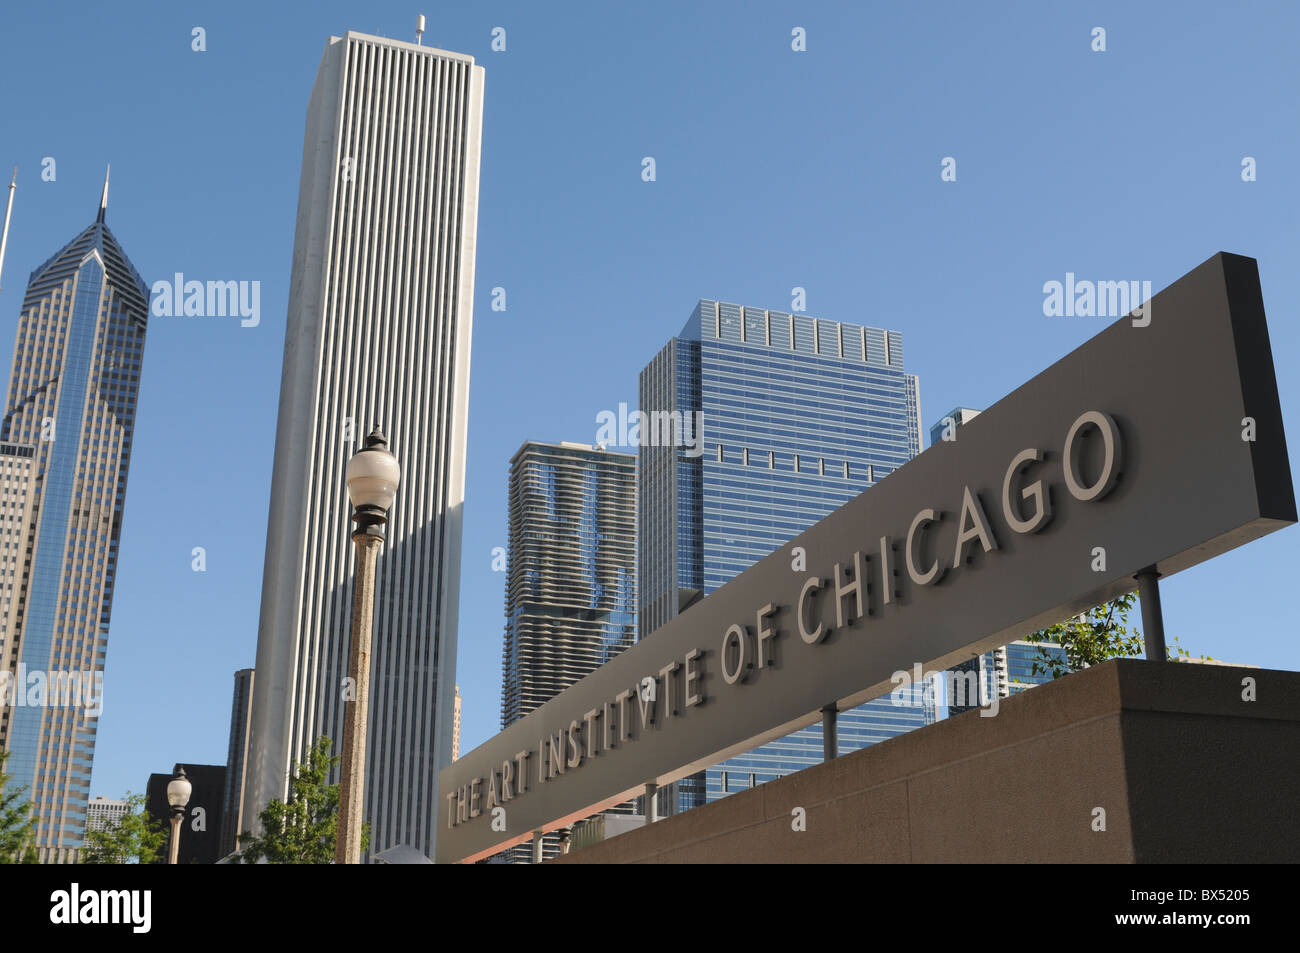 Señal de entrada al Instituto de Arte de Chicago con el Prudential, Aon y Aqua Torres emergiendo detrás. Foto de stock